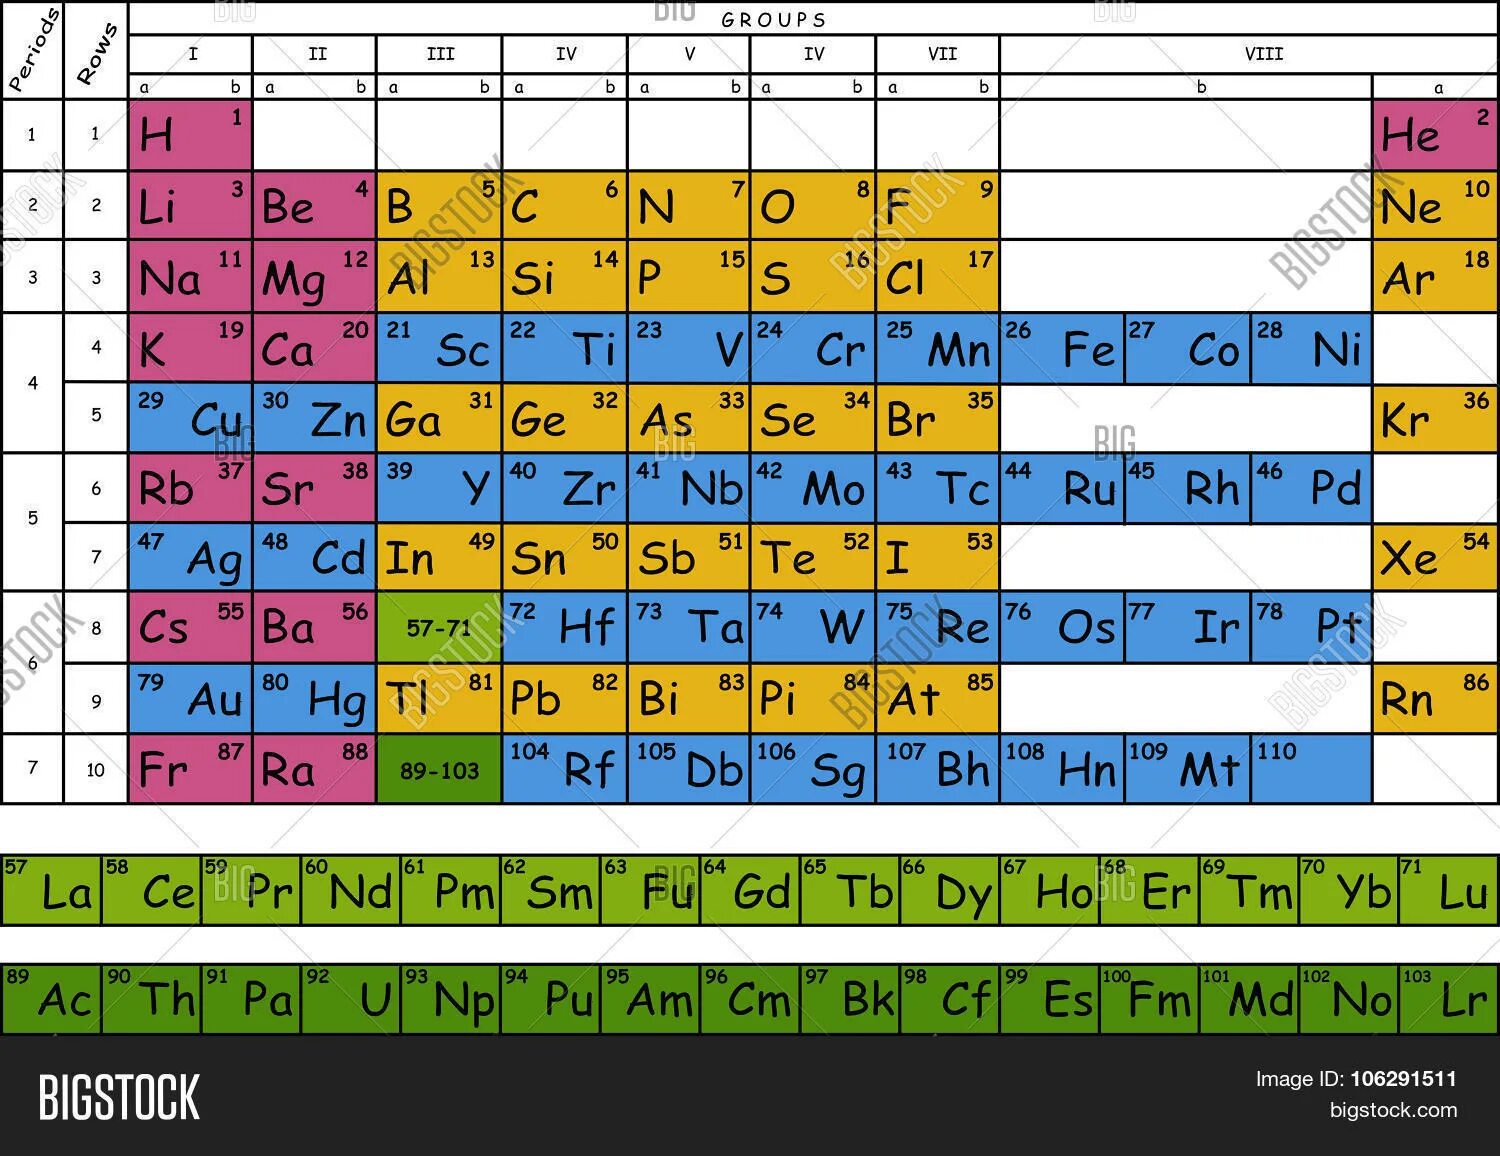 Rn какой химический элемент. Менделеева таблица Менделеева ЕГЭ. Таблица хим элементов Менделеева ЕГЭ. Химическая таблица элементов Менделеева цветная. Периодическая система химических элементов Менделеева ЕГЭ.